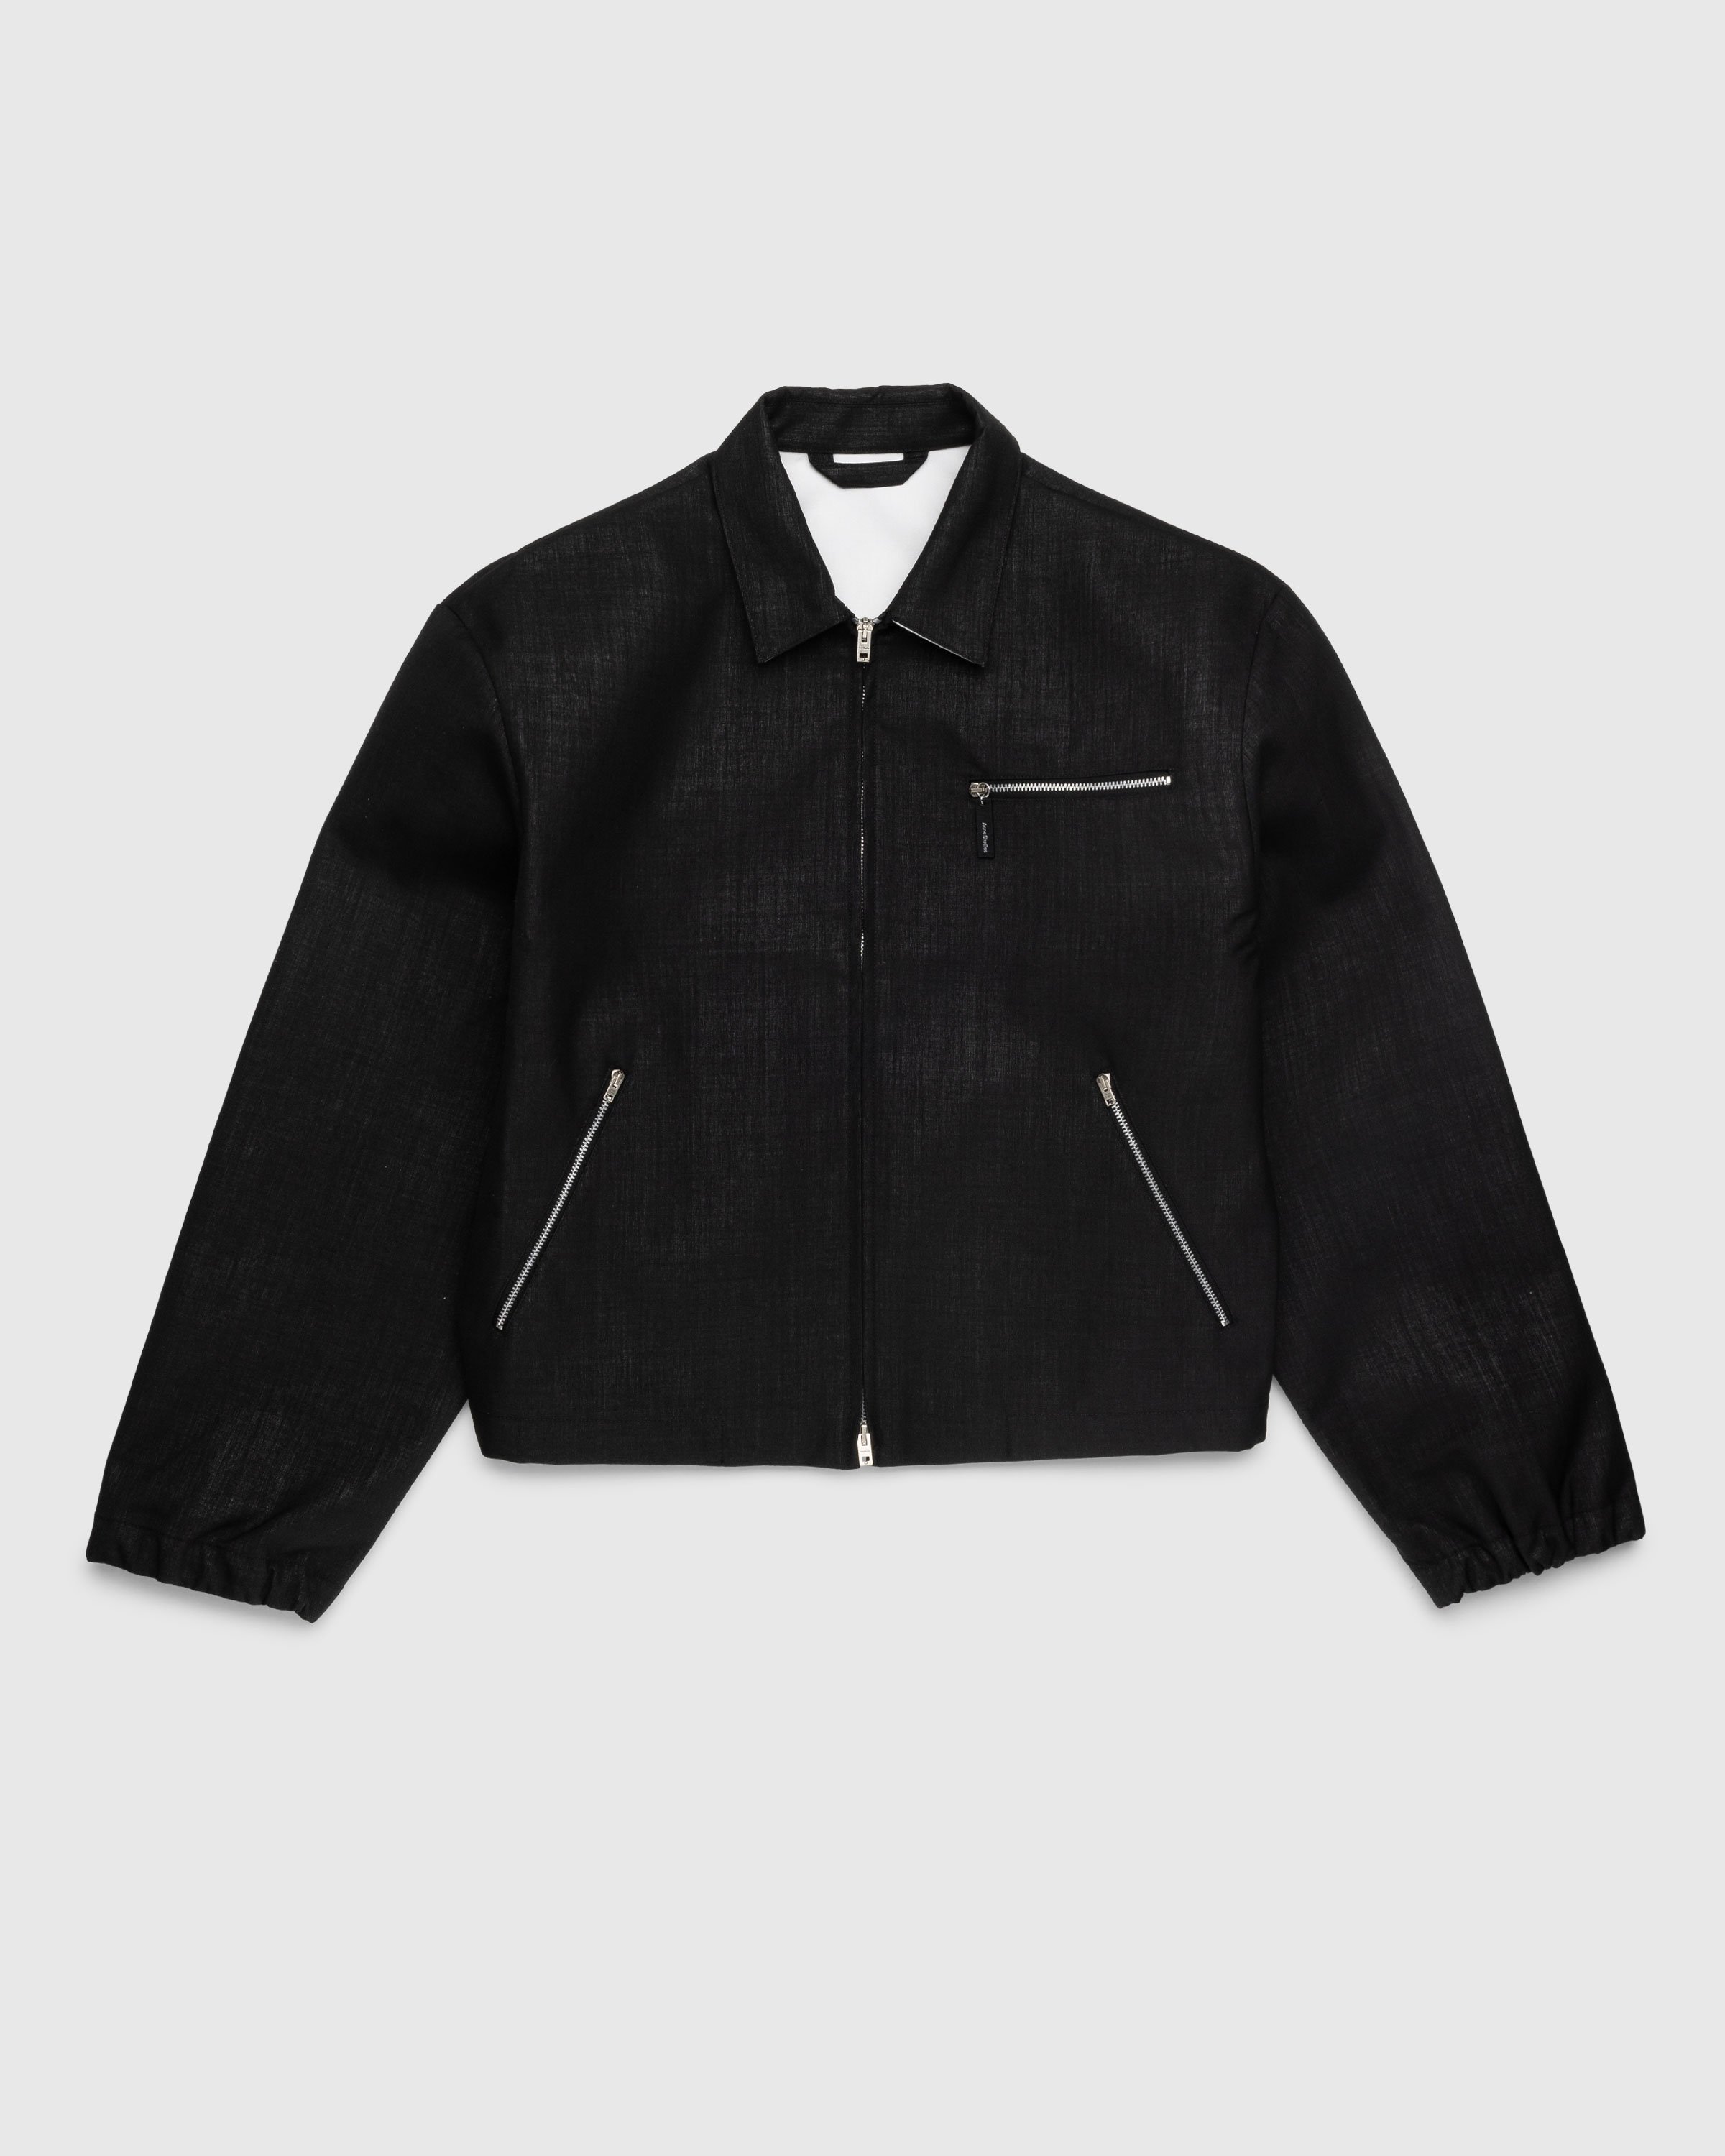 Acne Studios - Zippered Jacket Black - Clothing - Black - Image 1